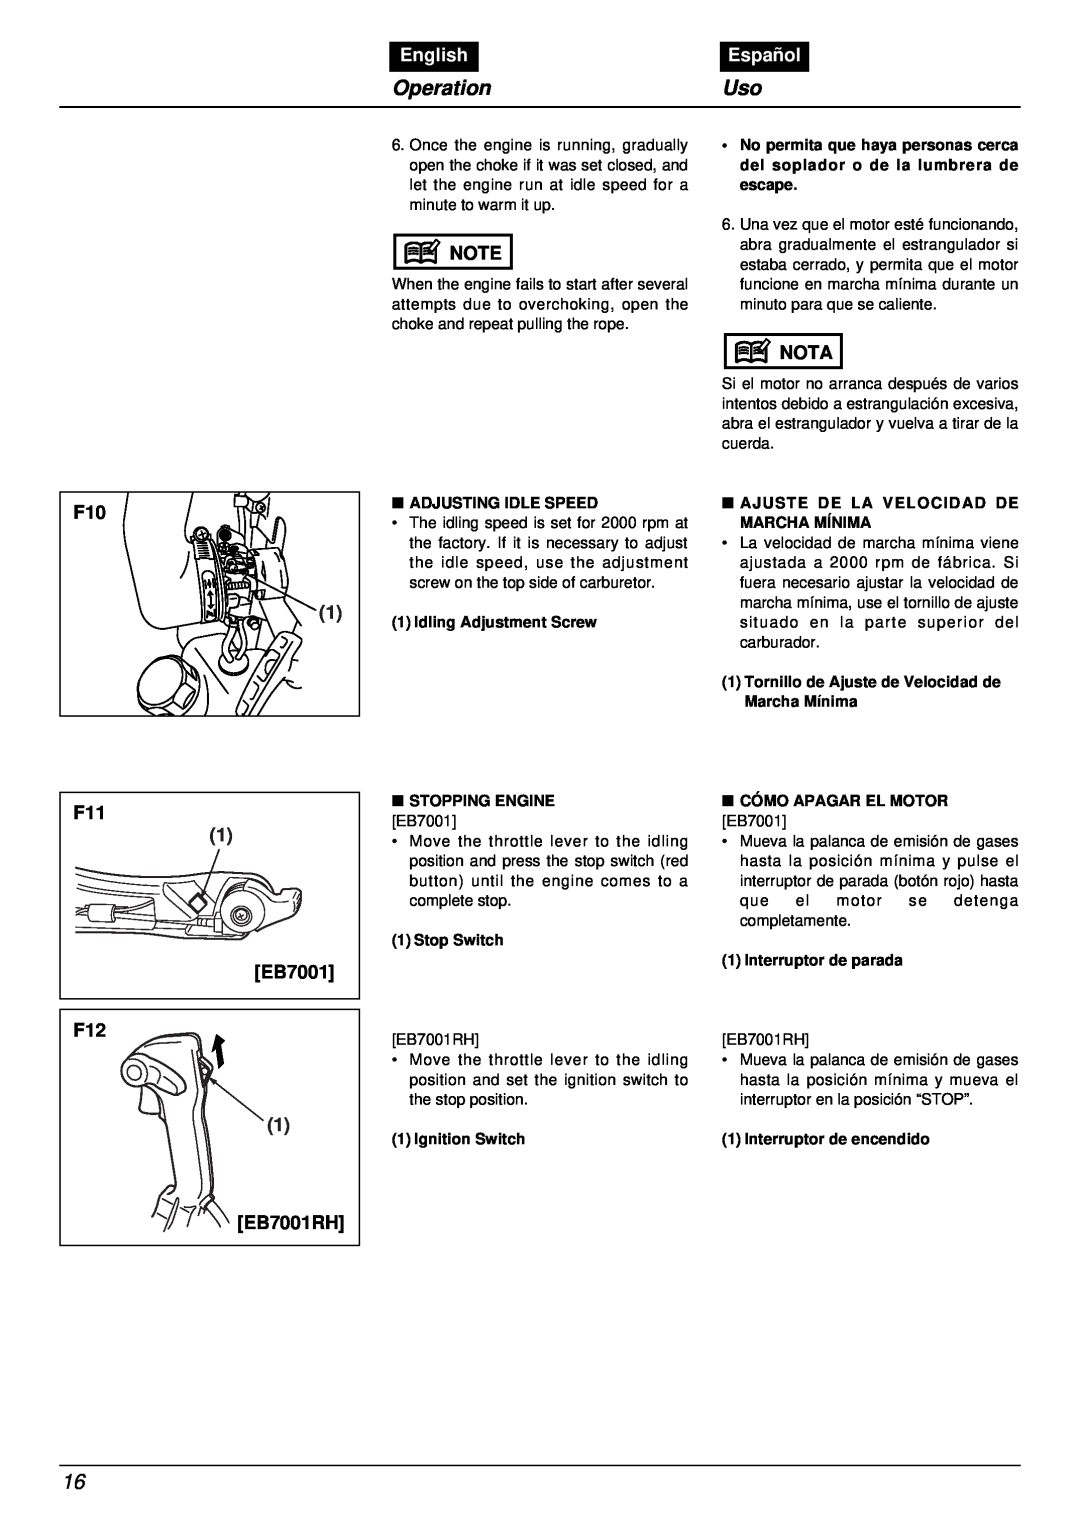 RedMax EB7001RH manual EB7001 F12, Operation, English, Español, Nota 